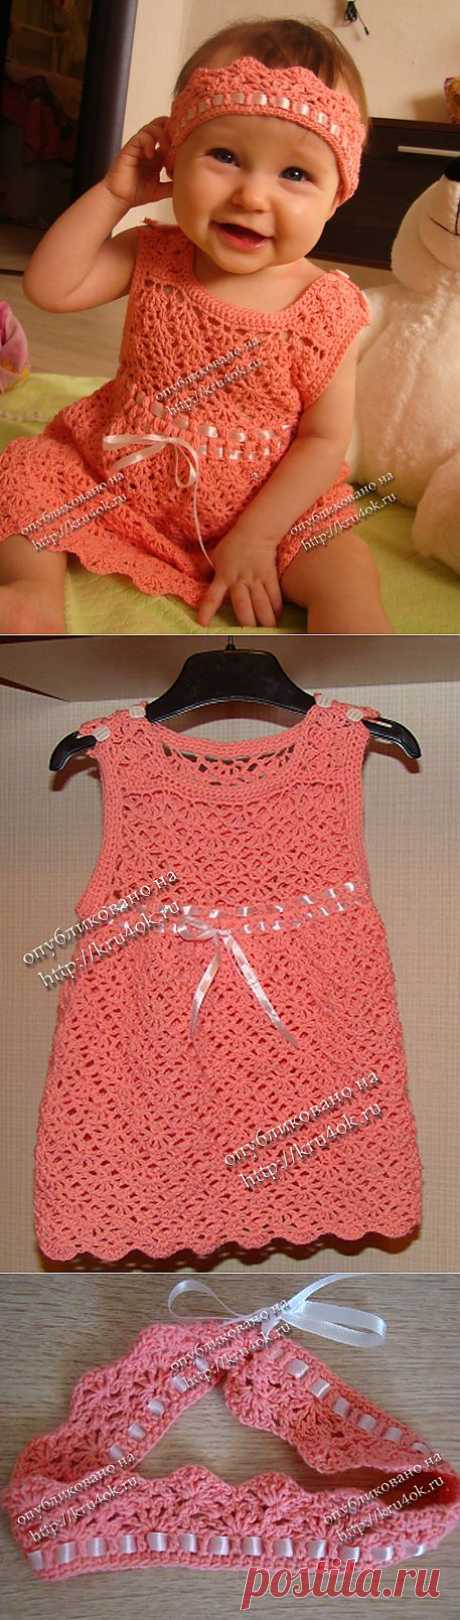 Персиковое платье и повязка для малышки.